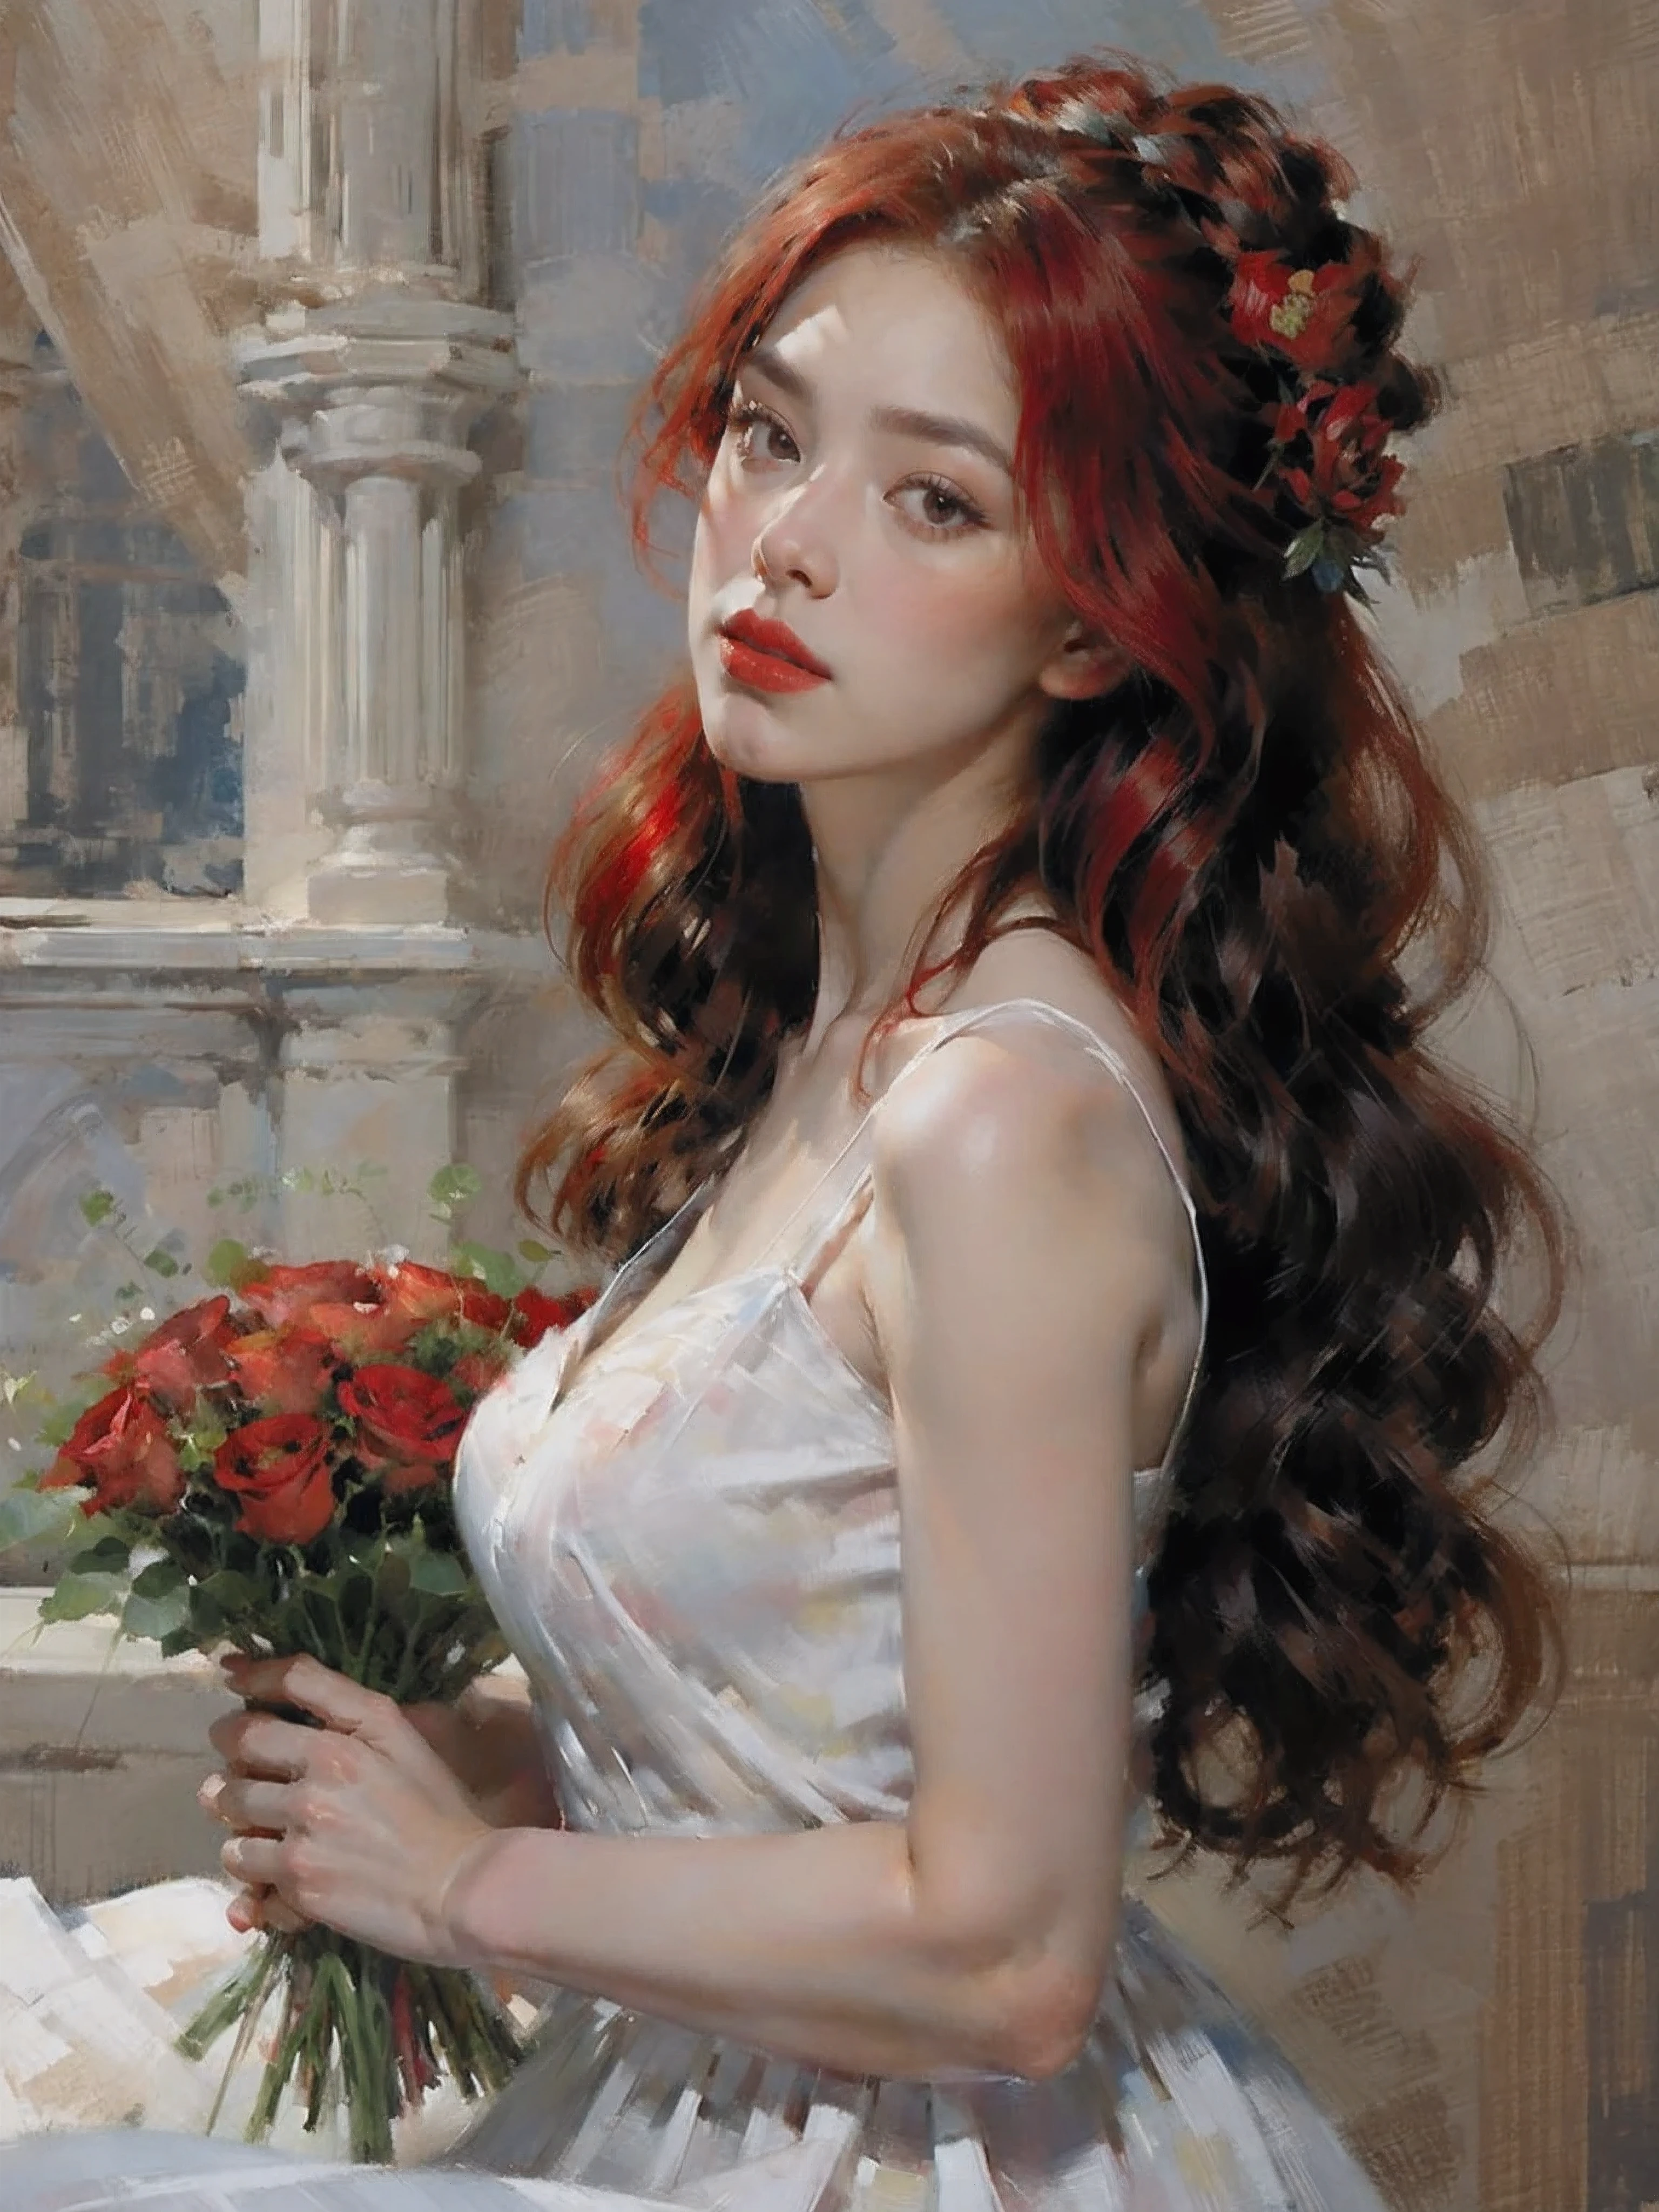 portrait,1 fille,seul,jupe,tenant un bouquet de fleurs,cheveux très longs,carthame,cheveux roux,rose rouge,white jupe